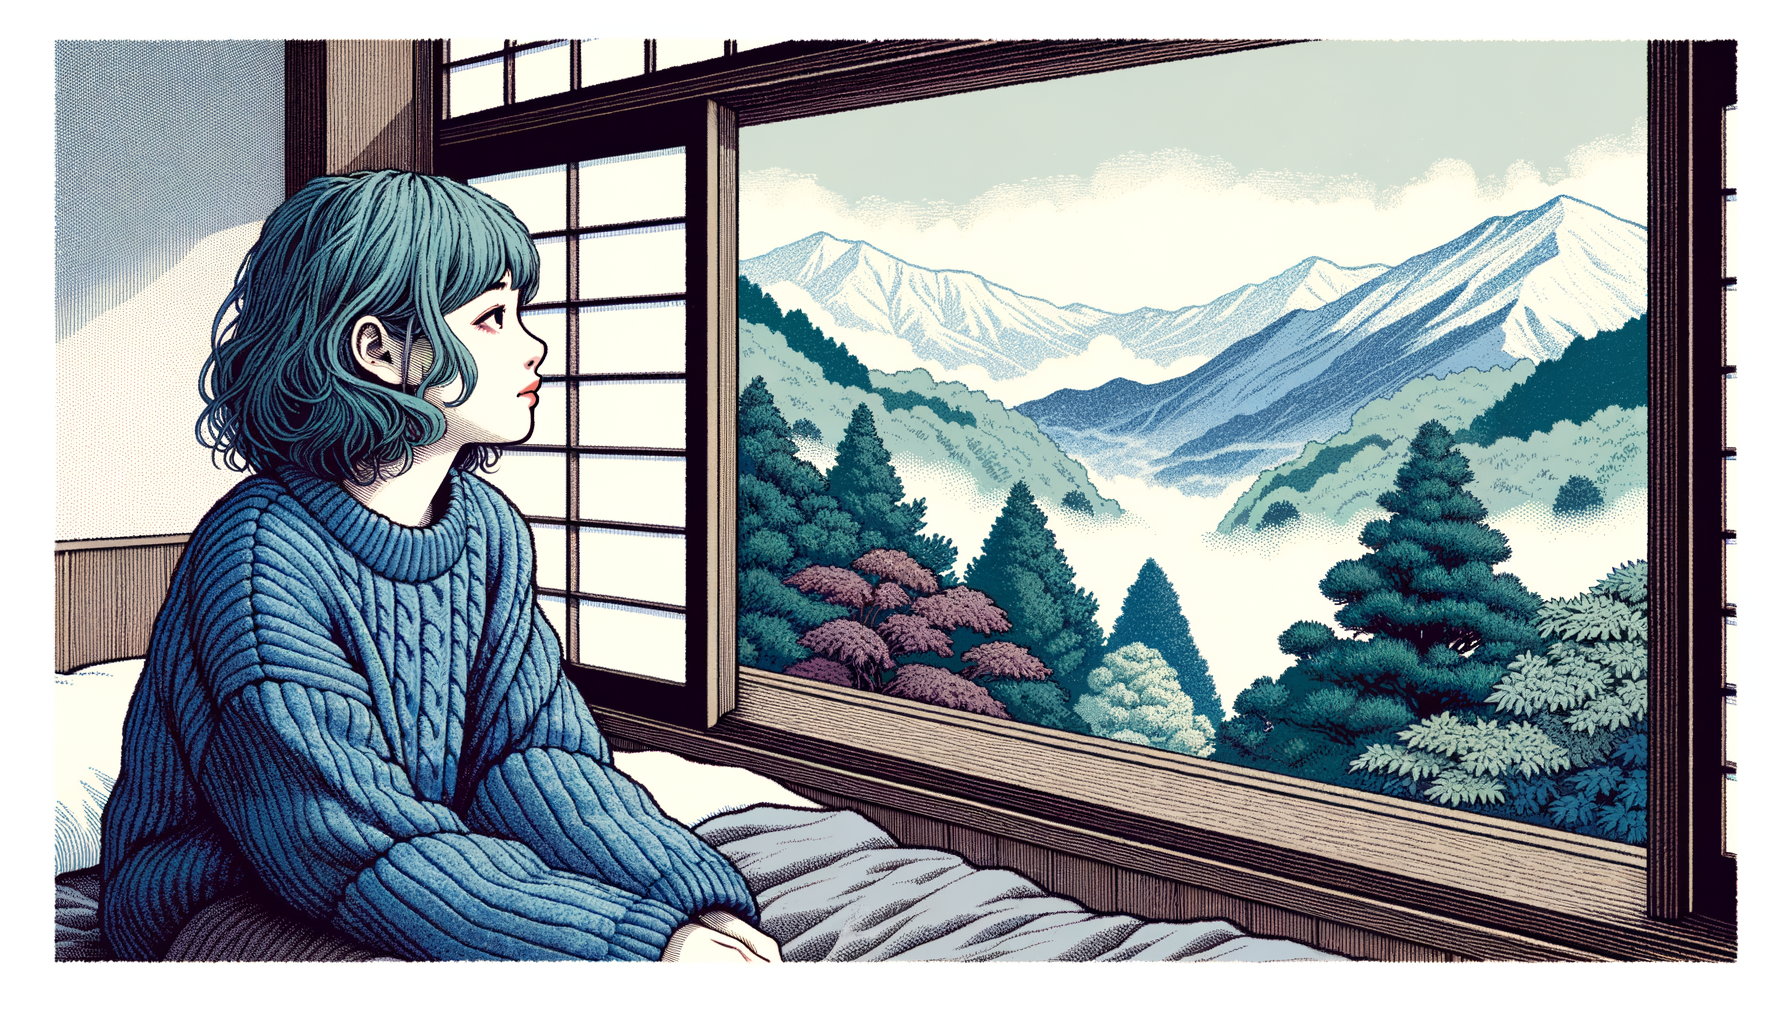 панорамные окна, вид на горы и деревья, девушка сидит на серой кровати слева, смотрит в окна справа, голубоватые волосы, растрепанные волосы, в голубом свитере